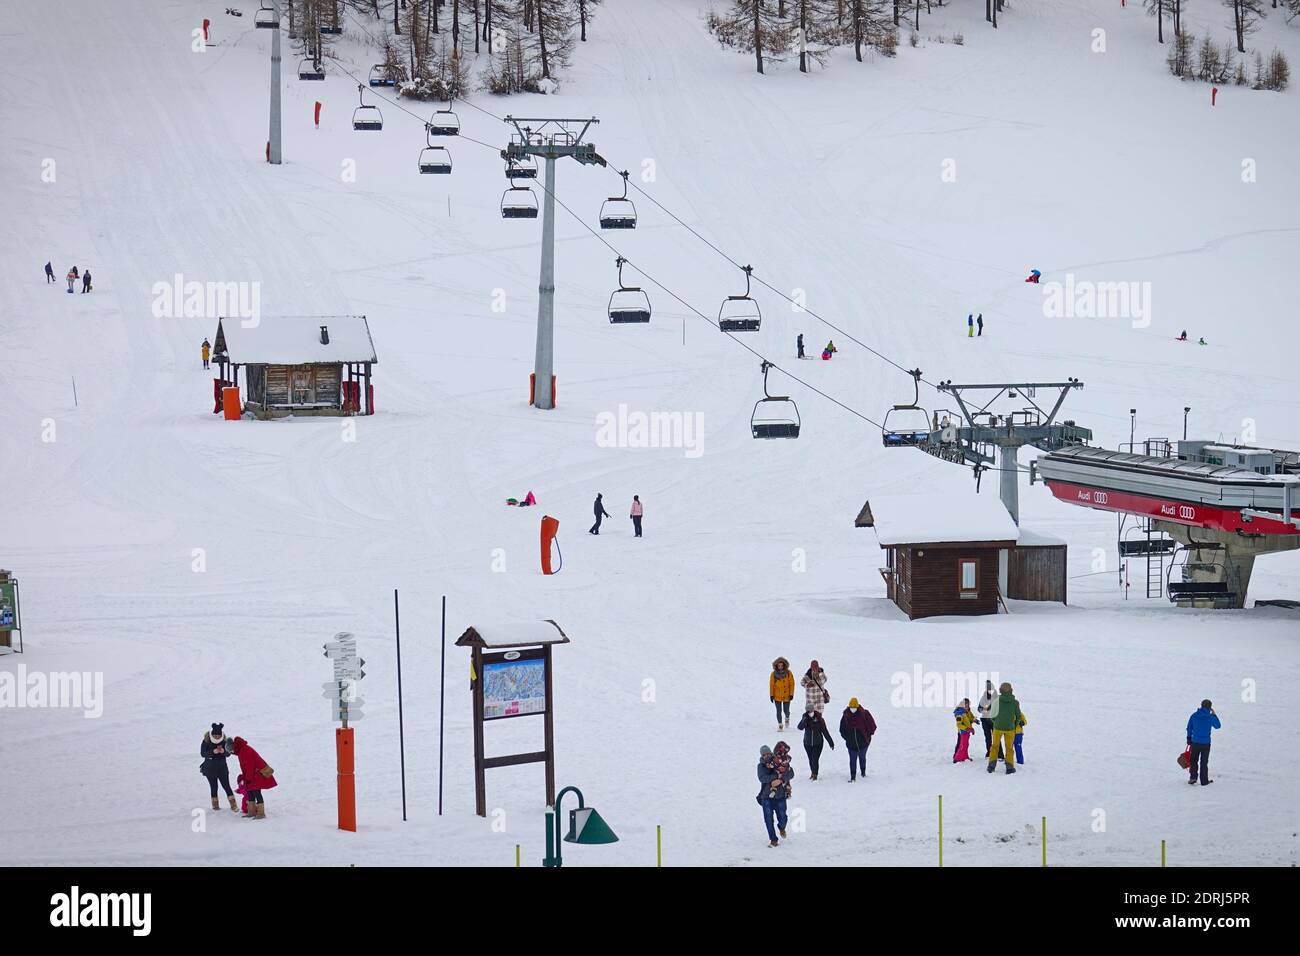 Las pistas de esquí cerraron debido a la pandemia en Navidad, pocos turistas con niños juegan en la nieve con los bobsleighs. Sestriere, Italia - Diciembre 2020 Foto de stock